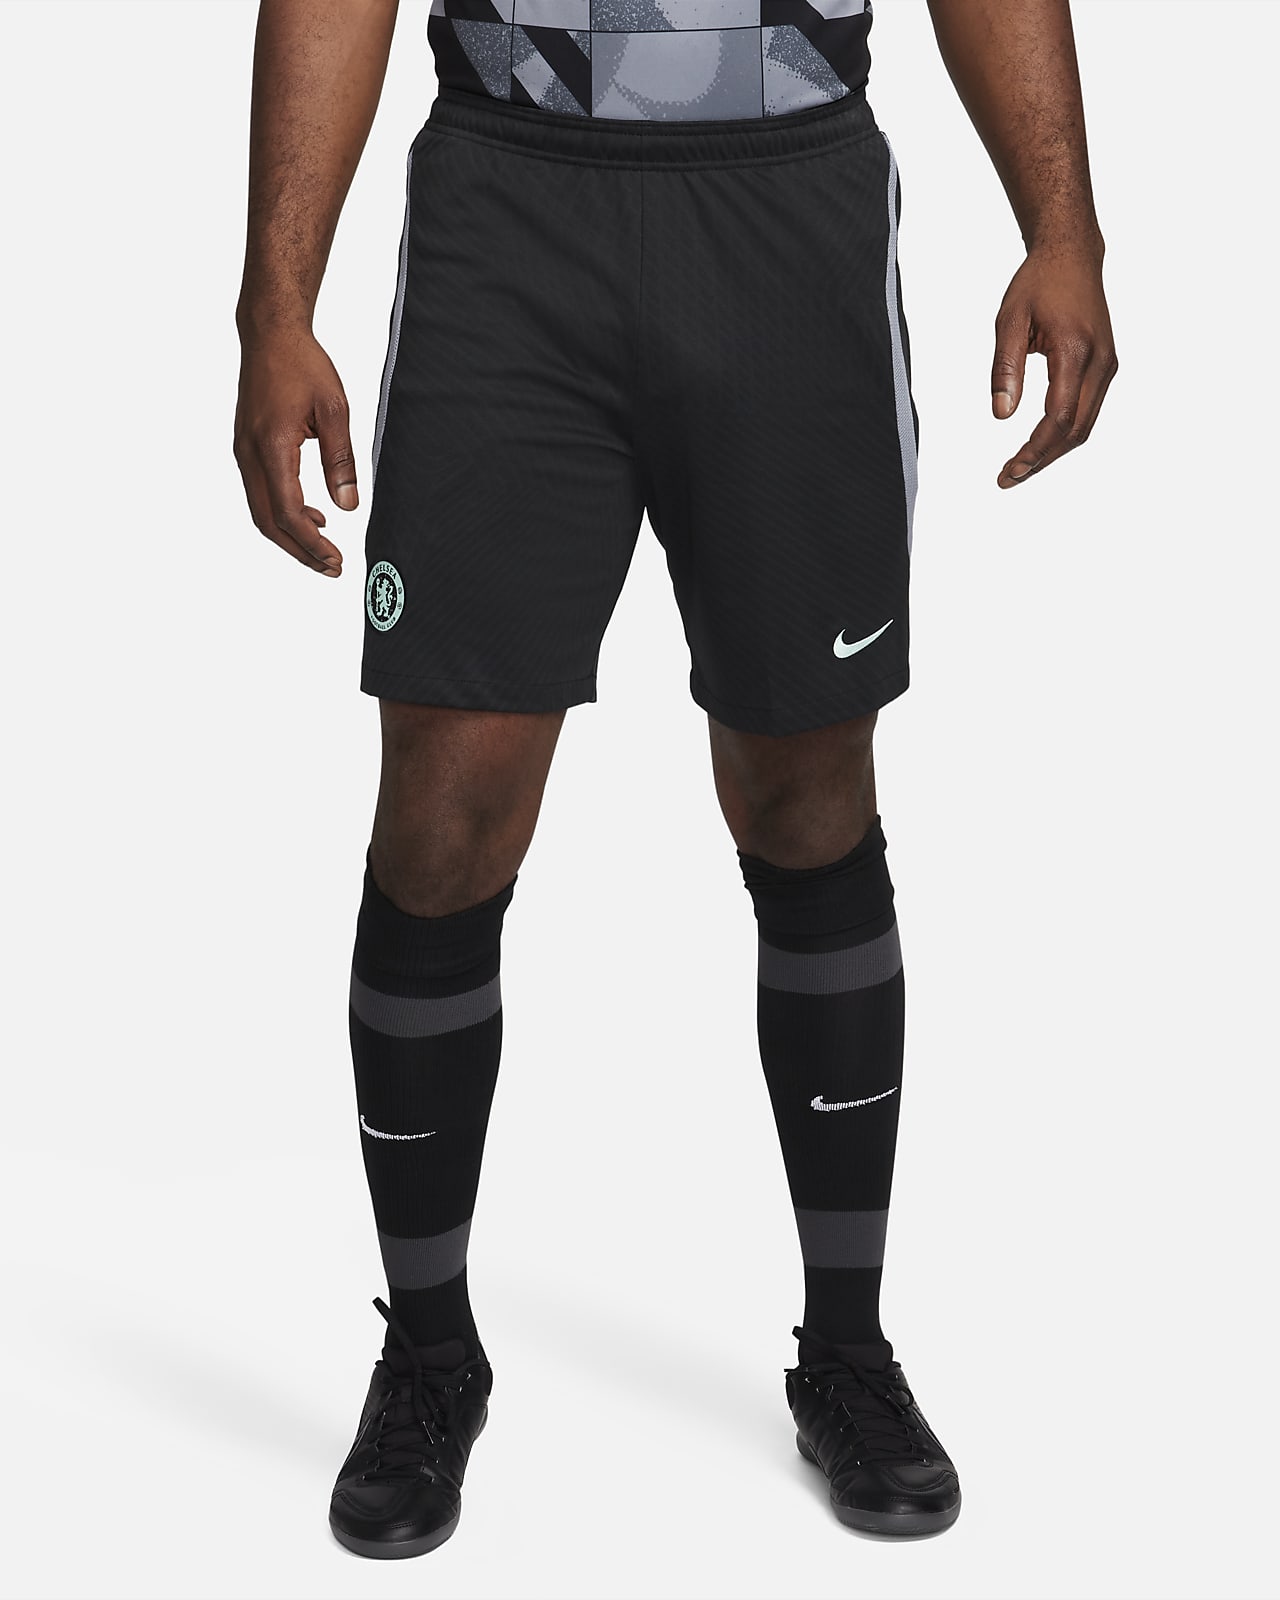 Ανδρικό ποδοσφαιρικό πλεκτό σορτς Nike Dri-FIT εναλλακτικής εμφάνισης Τσέλσι Strike